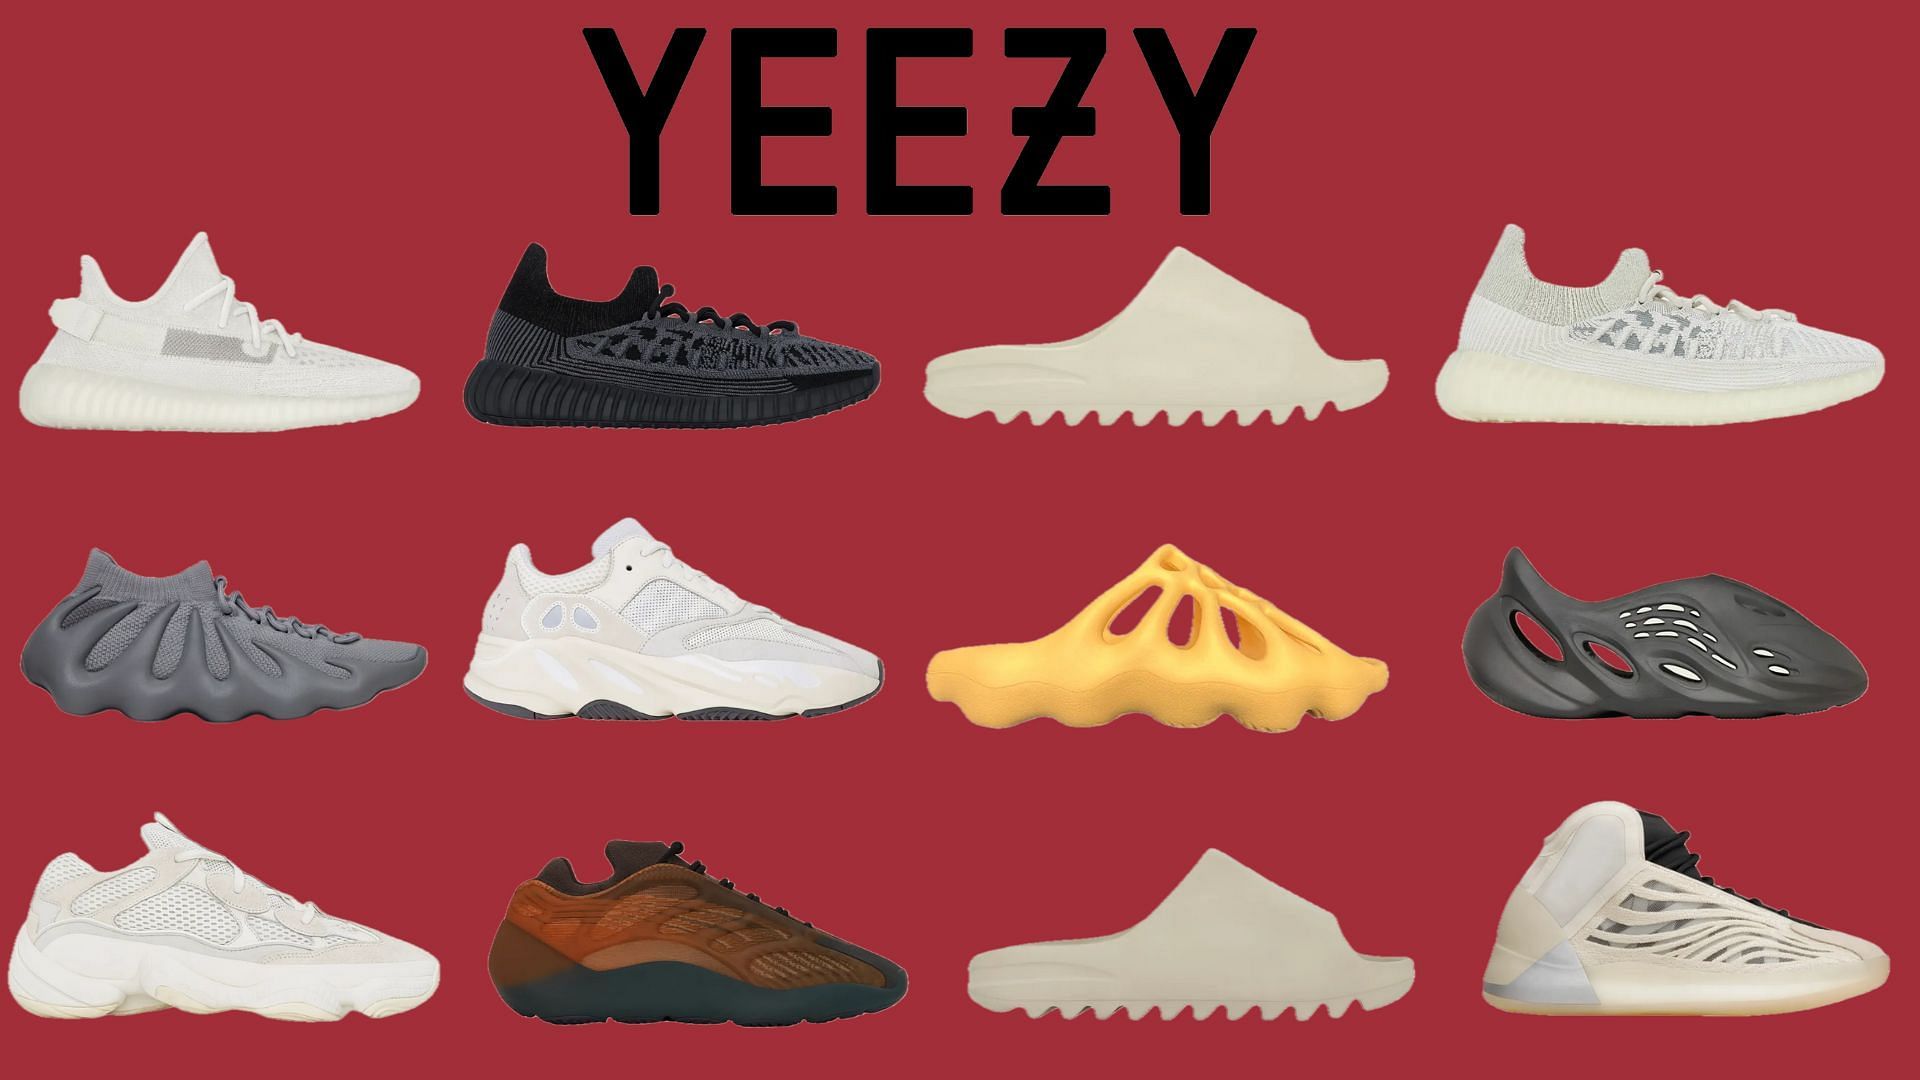 Every Yeezy Sneaker Releasing in August - Sneaker News